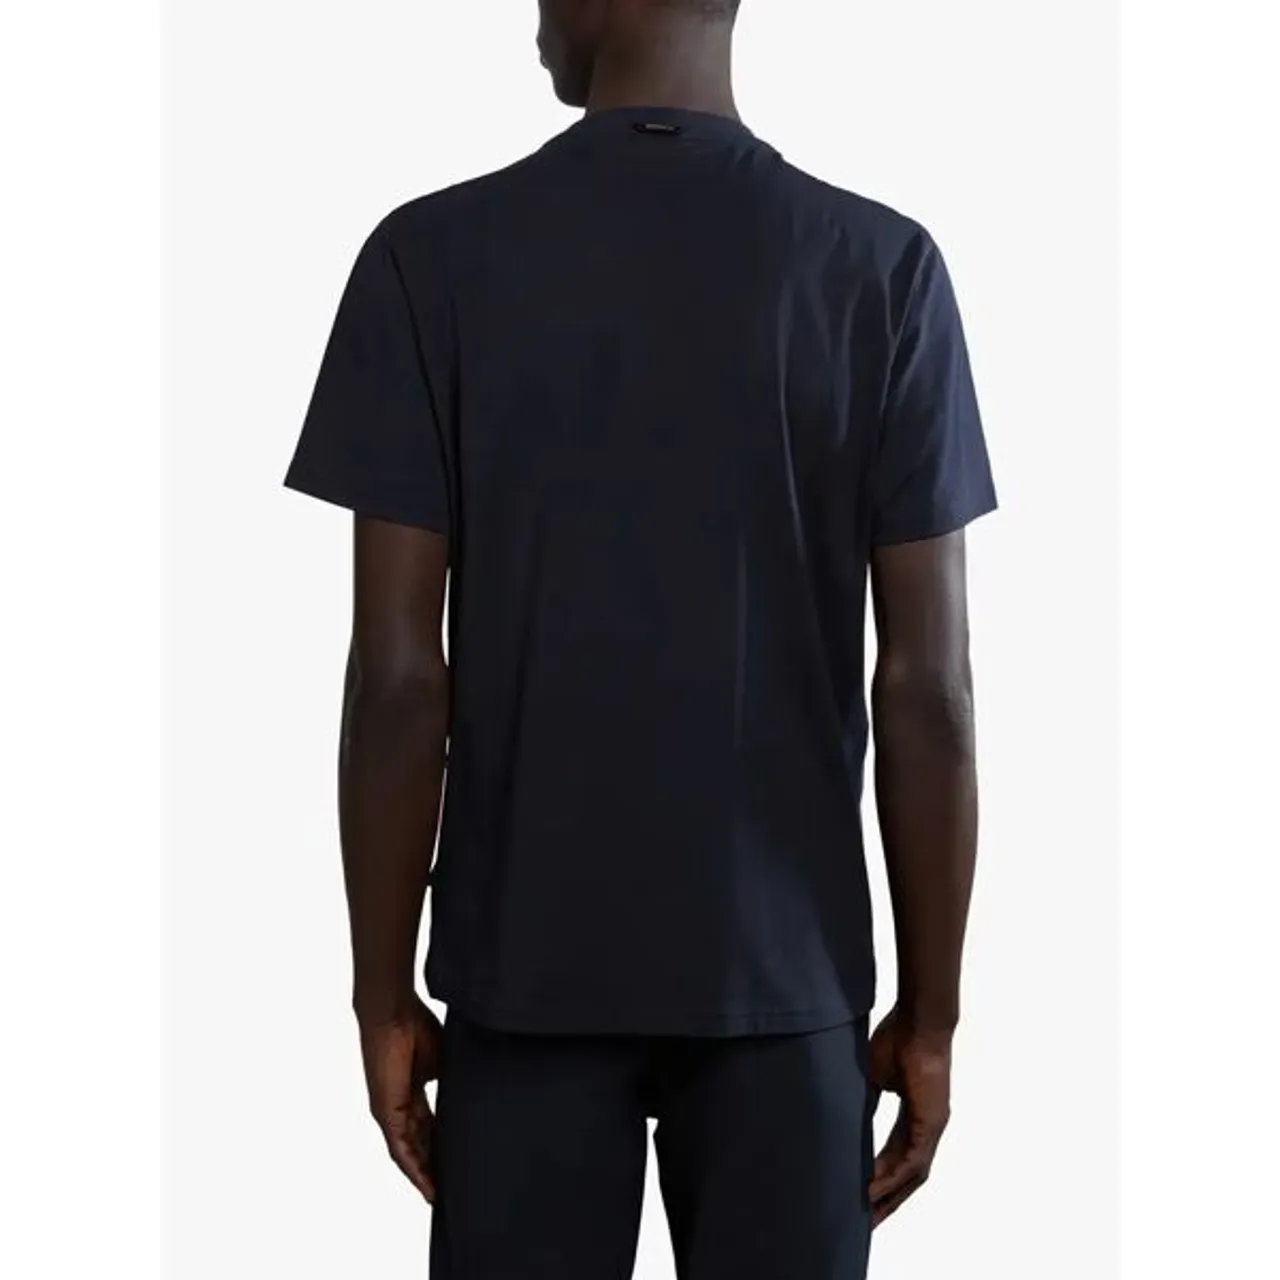 Napapijri Canada Graphic T-Shirt, Black/Multi - Black/Multi - Male